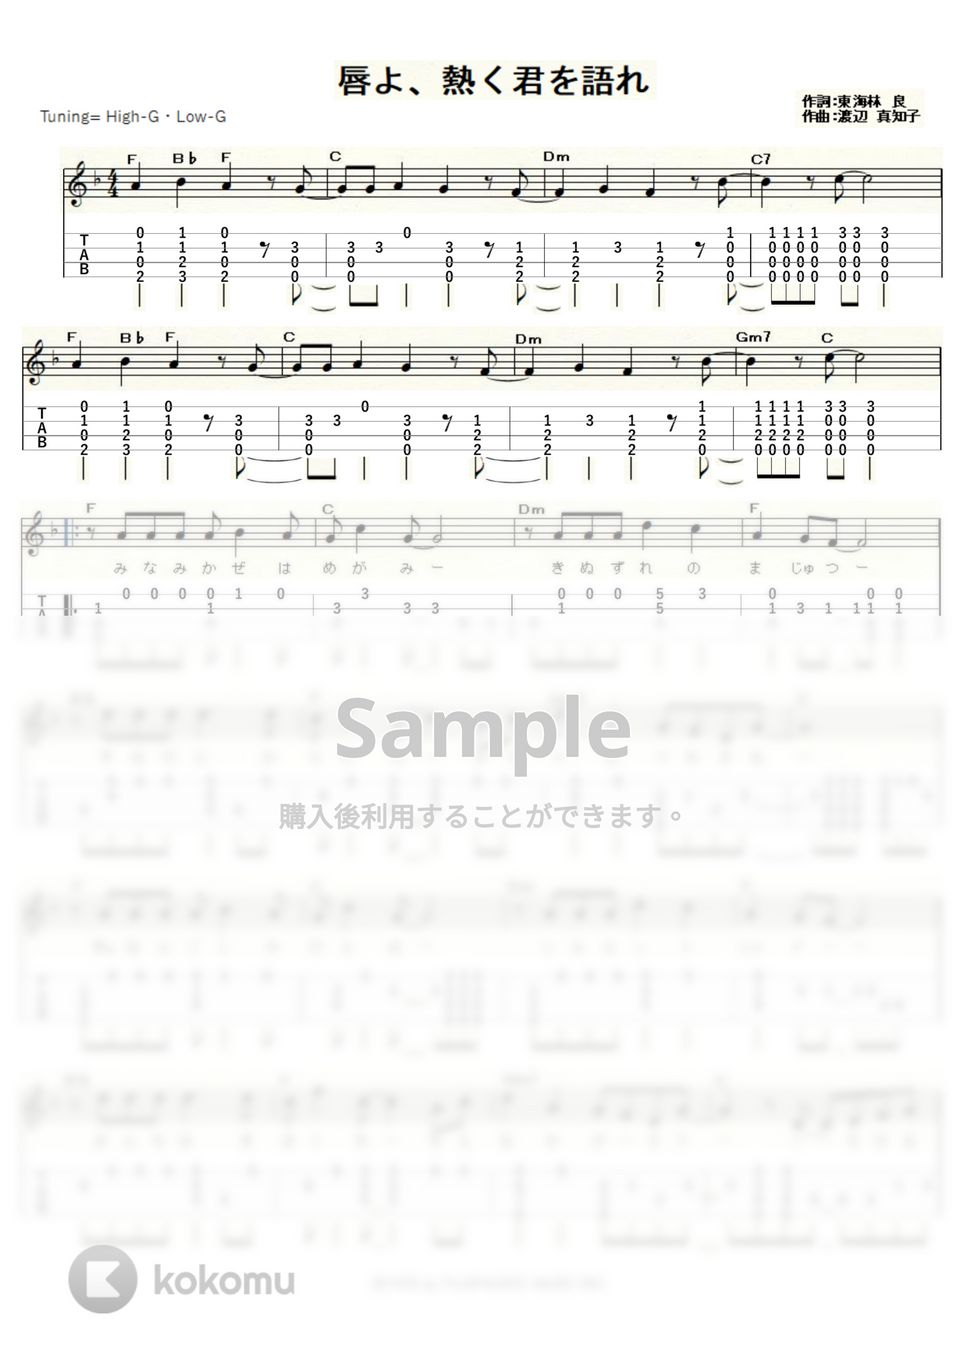 渡辺真知子 - 唇よ、熱く君を語れ (ｳｸﾚﾚｿﾛ / High-G,Low-G / 中級) by ukulelepapa